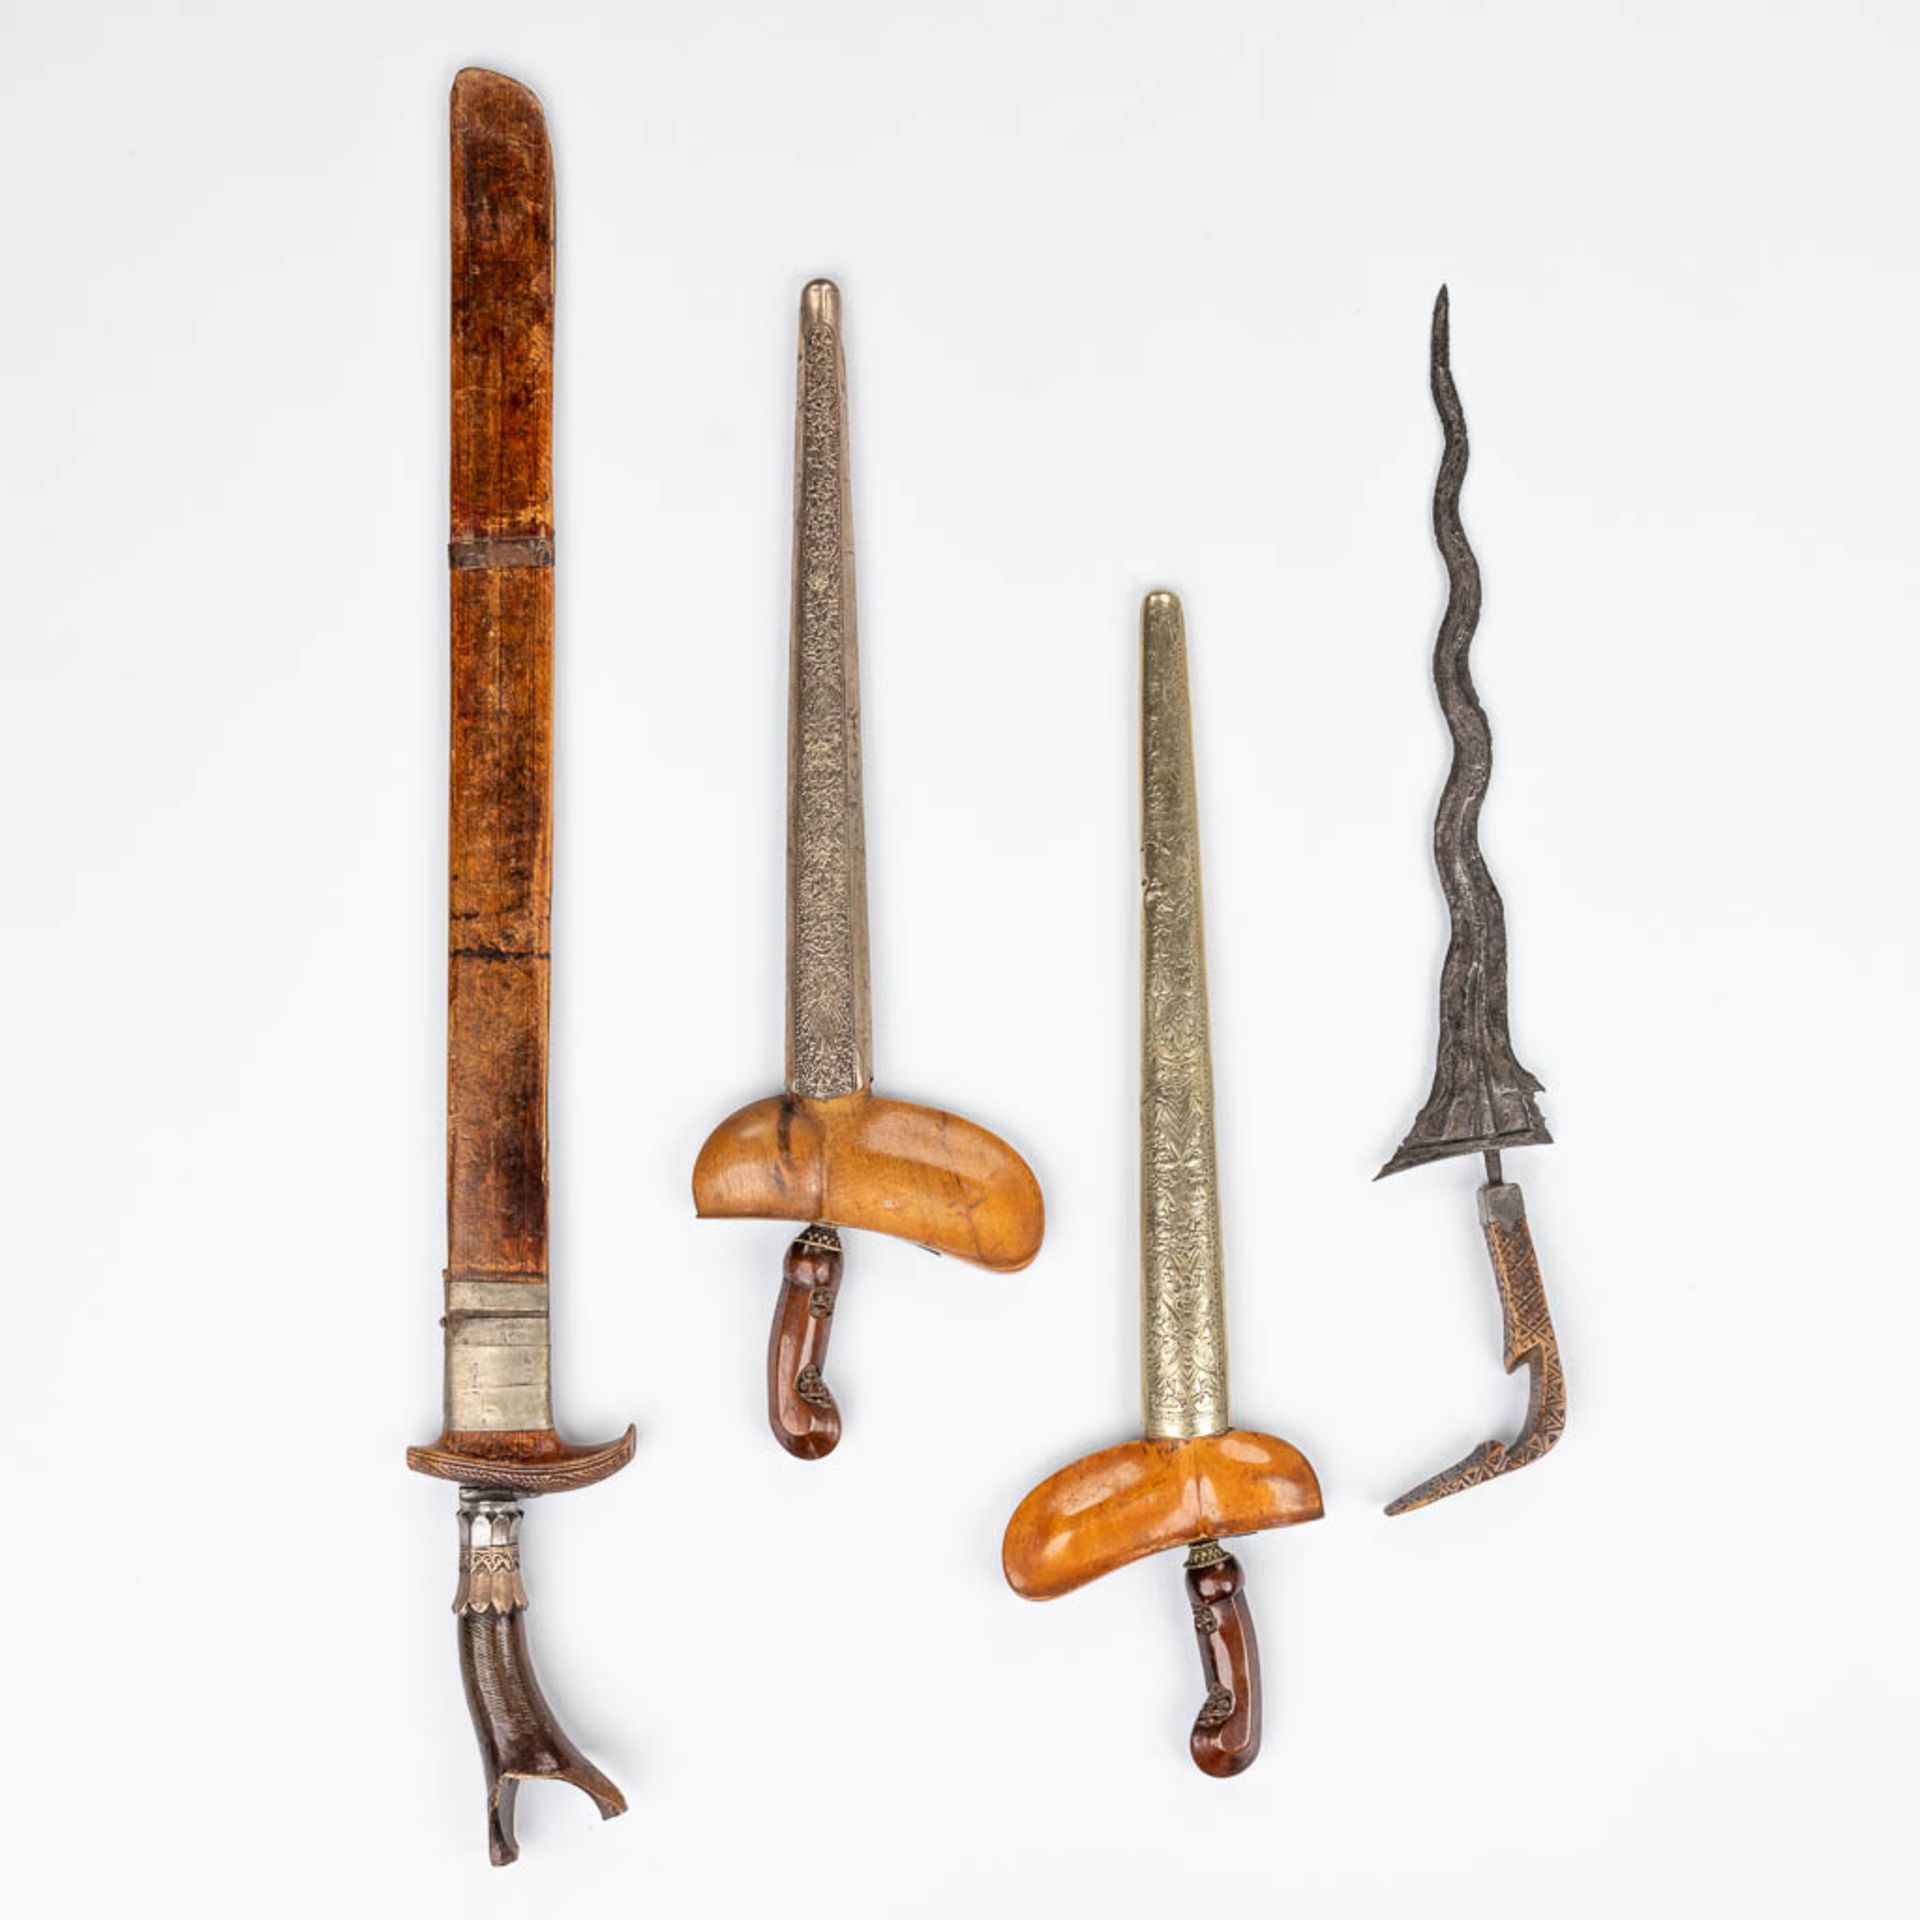 A collection of 4 'Kris' swords, Java, 18de/19de eeuw. (W: 74 cm)